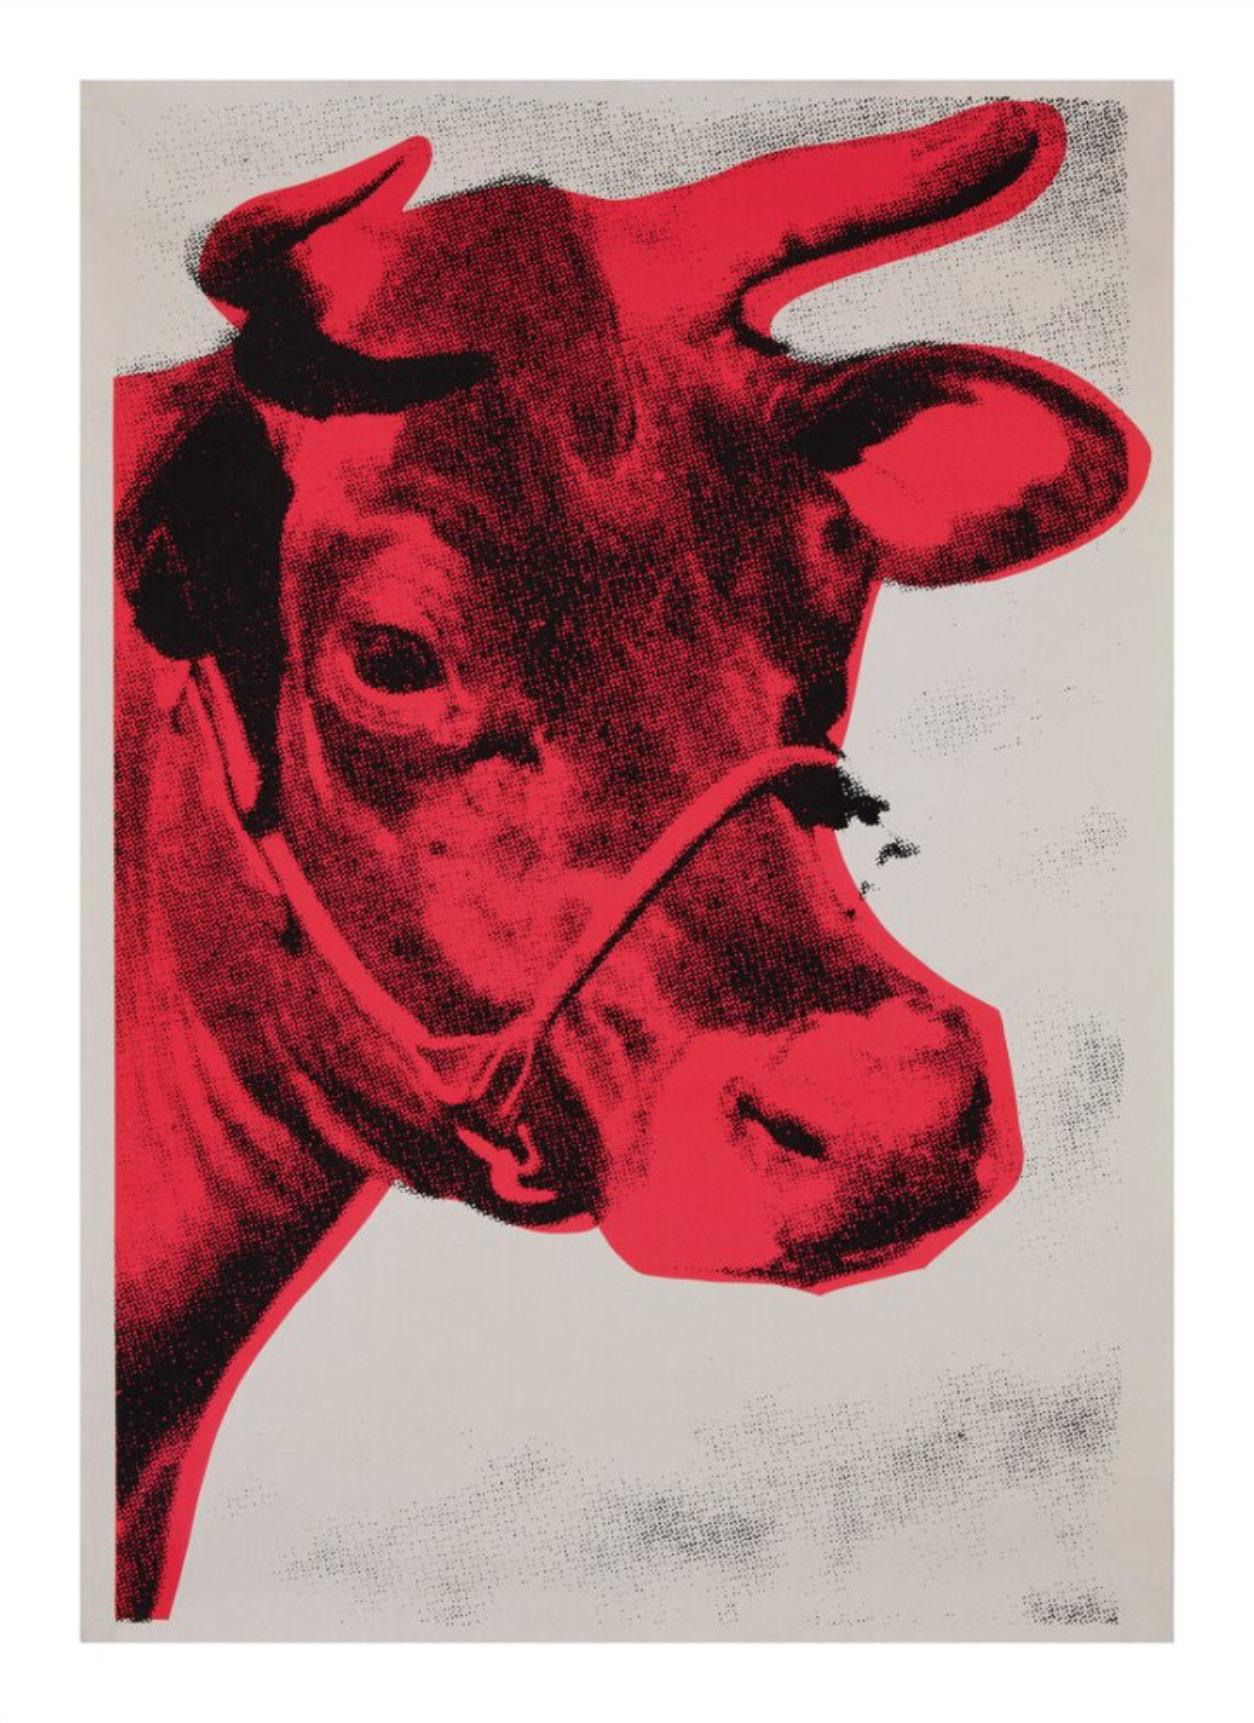 Andy Warhol, Kuh, 1976 (Spezialausgabe)

Texturiertes, schweres, säurefreies Archiv-Aquarellpapier mit lichtechten Tinten

Bildgröße 60 x 90 cm (23,62 x 35,43 Zoll)
Papierformat 70 x 100 cm (27,56 x 39,37 Zoll)

In einer Ausstellung in der Galerie